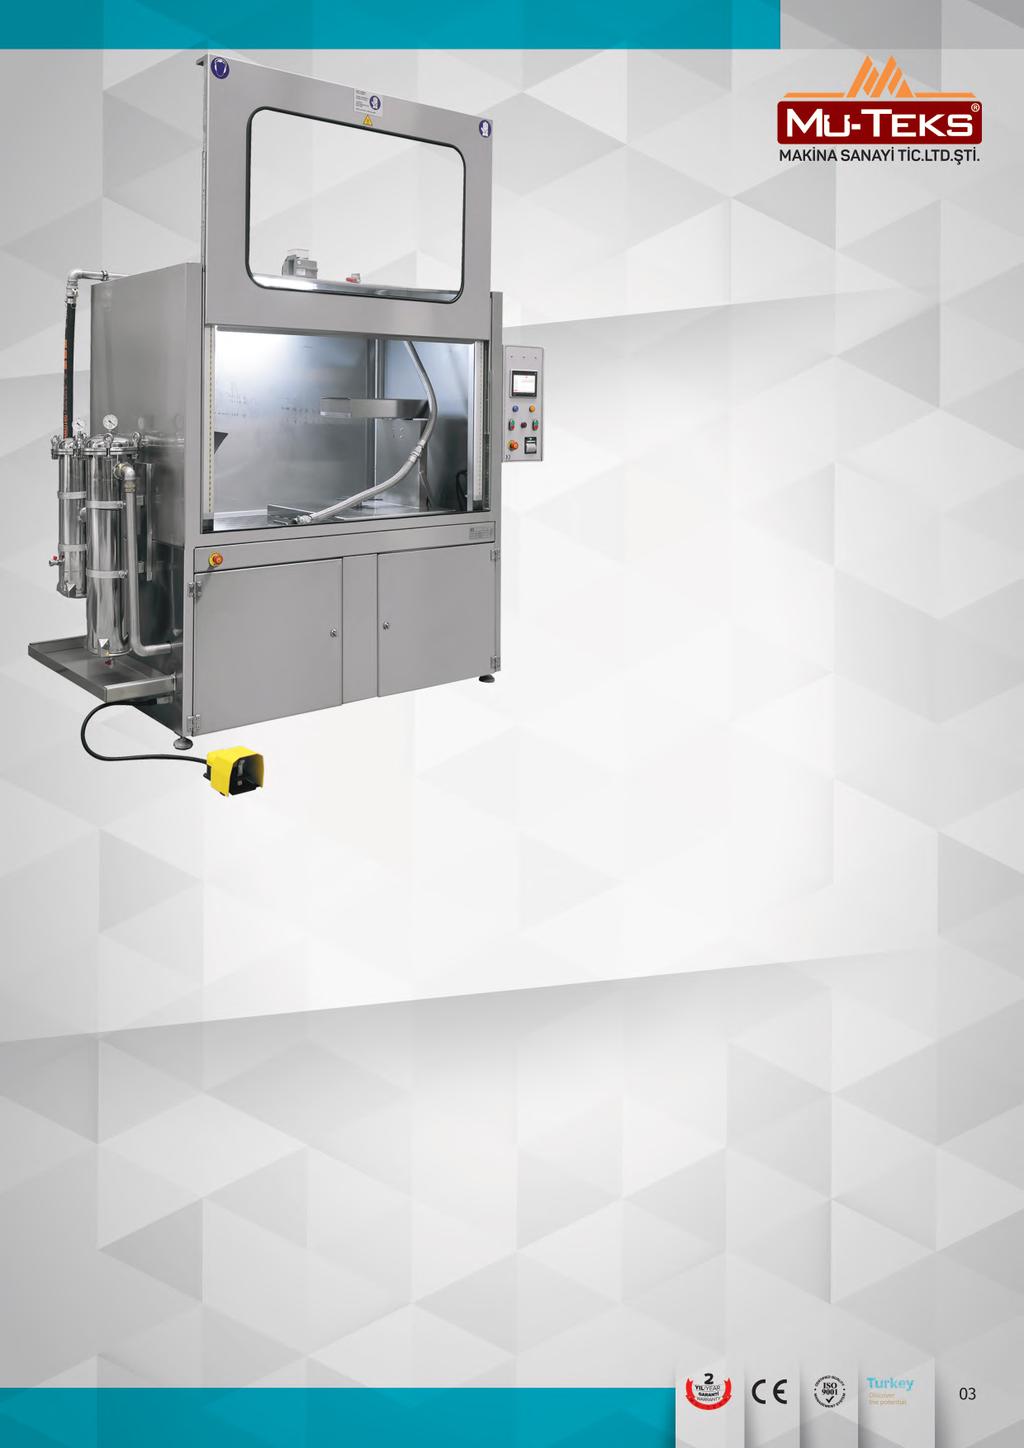 PY-200 DPF Dizel Partikül Temizleme Makinesi DPF Cleaner Machine DOKUNMATİK EKRAN Ekran üzerinden DPF yi basınça tıkanıklığın test edebilirsiniz.